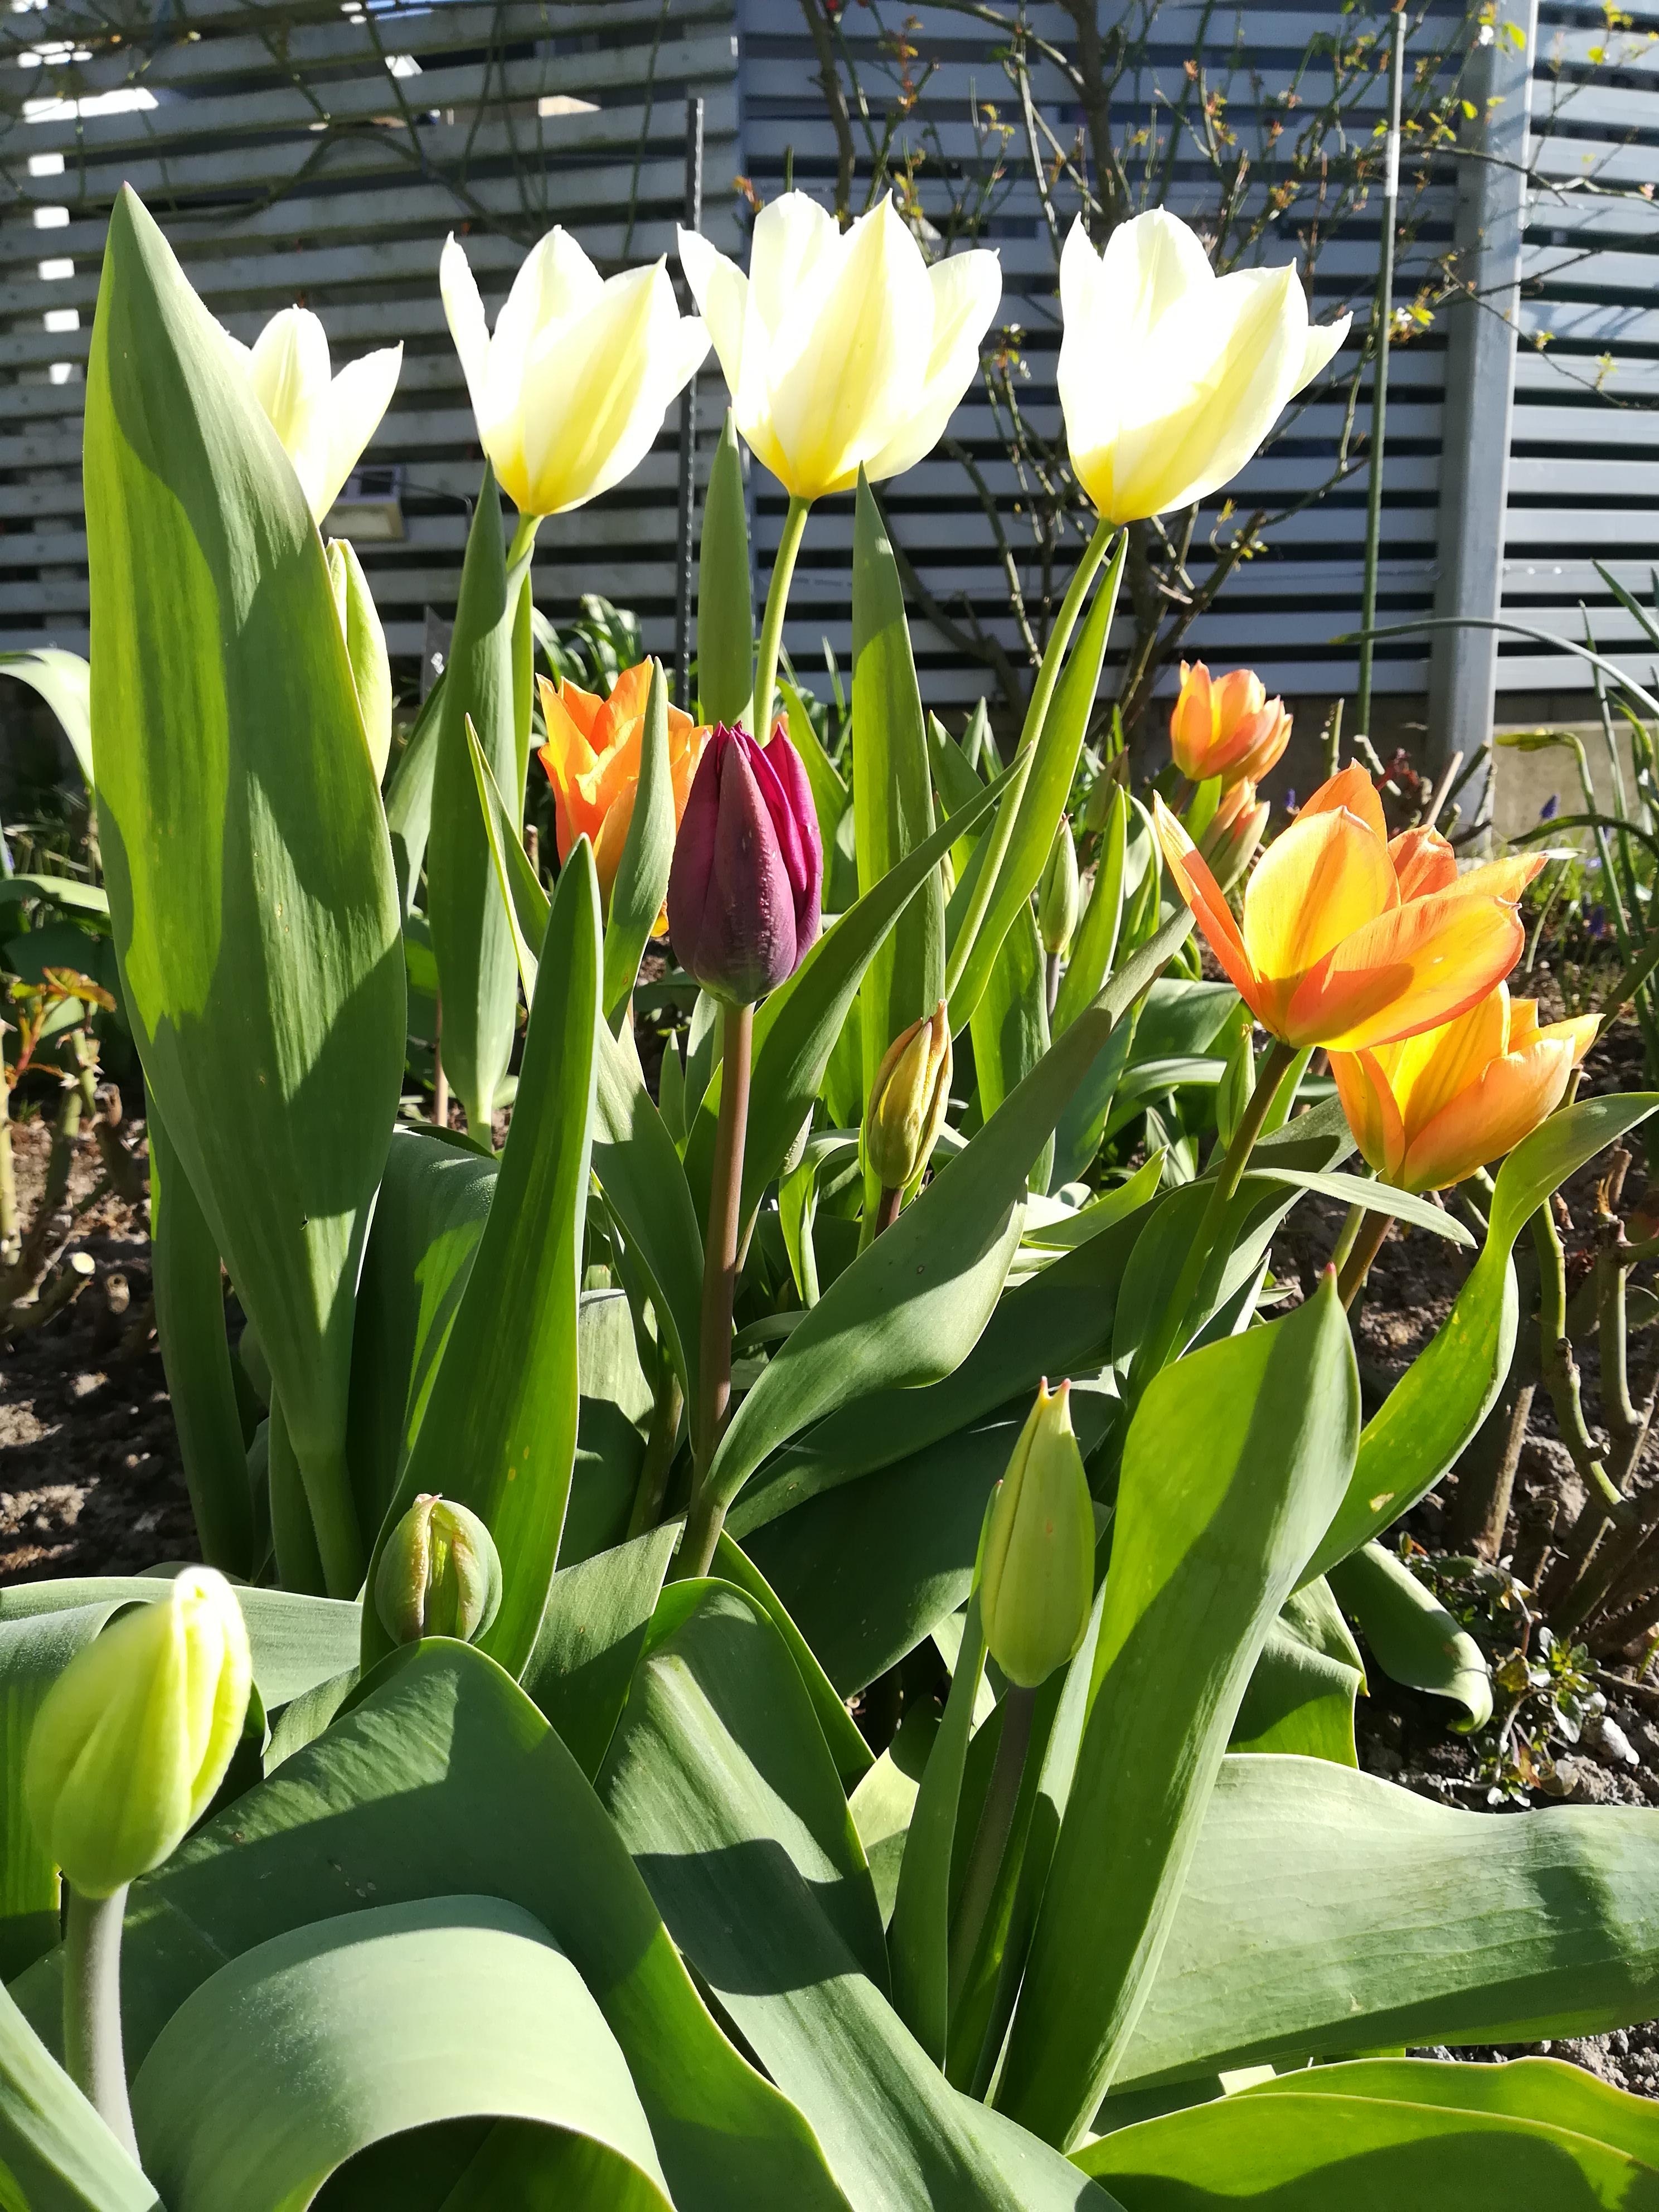 Es blüht so schön überall! #neuhier, #Tulpen, #sonne, #garten,#frühling, #draußensein